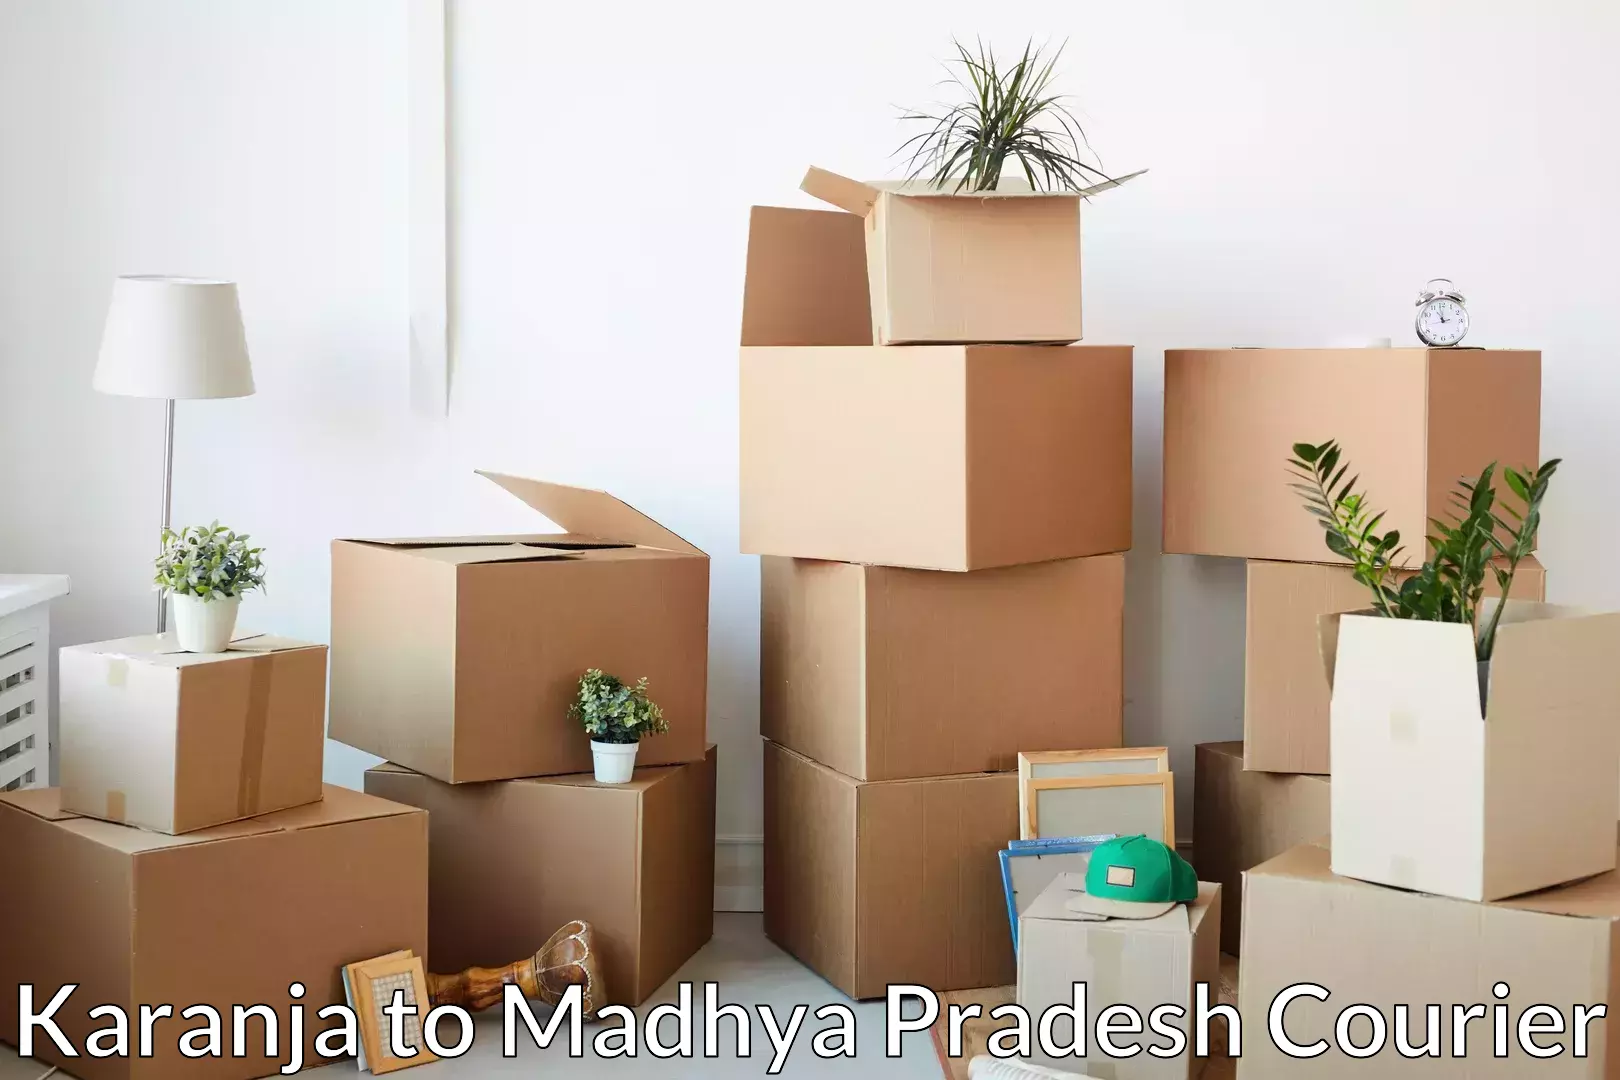 Reliable moving assistance Karanja to Madhya Pradesh